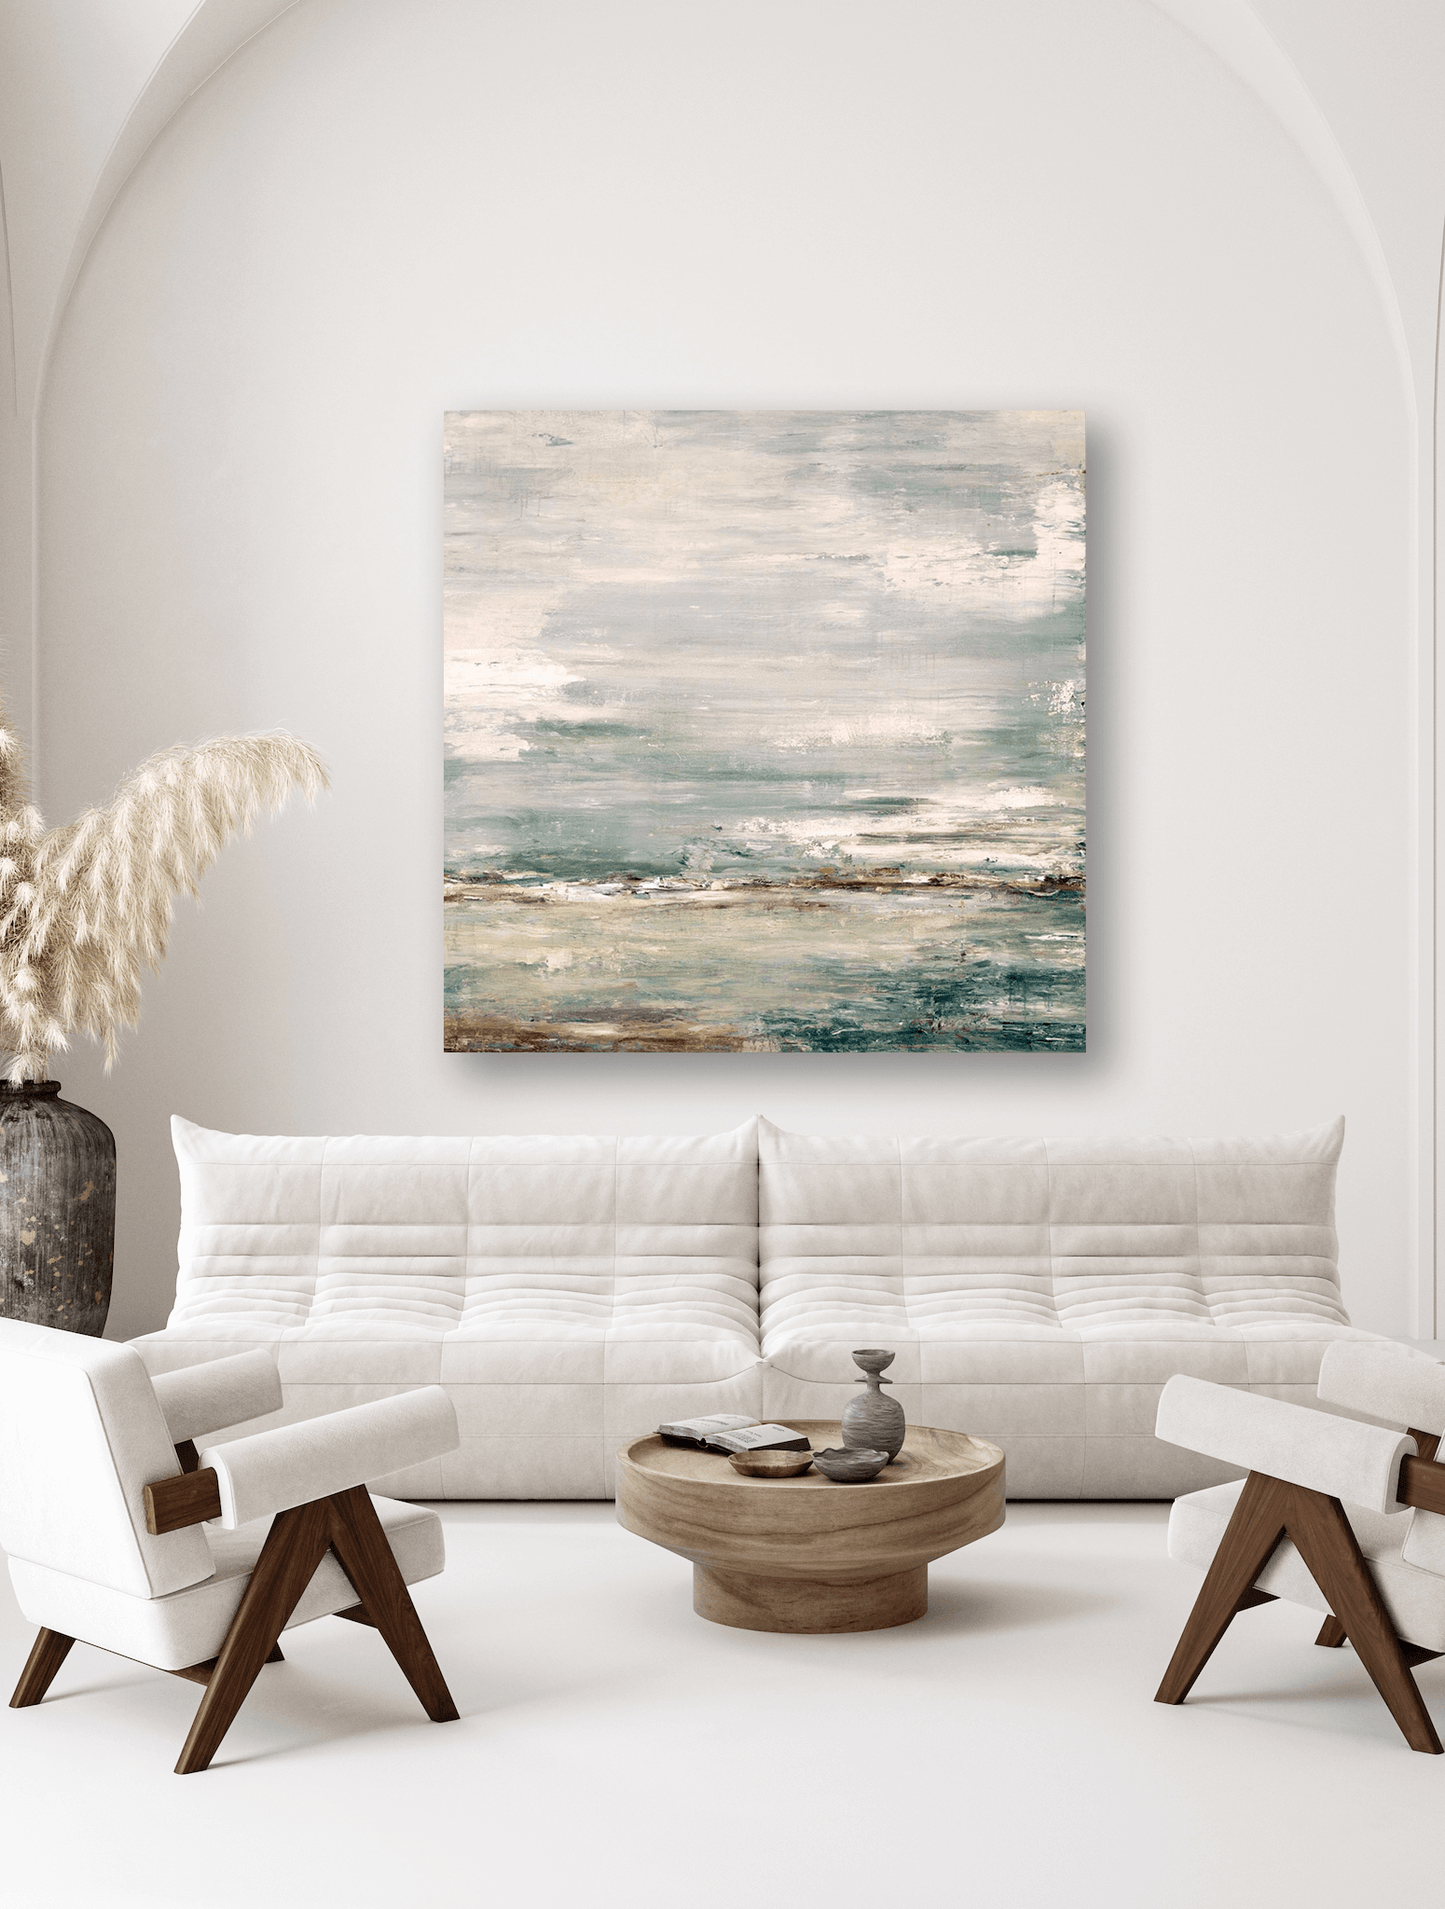 Sea and Sky Artist Enhanced Canvas Print